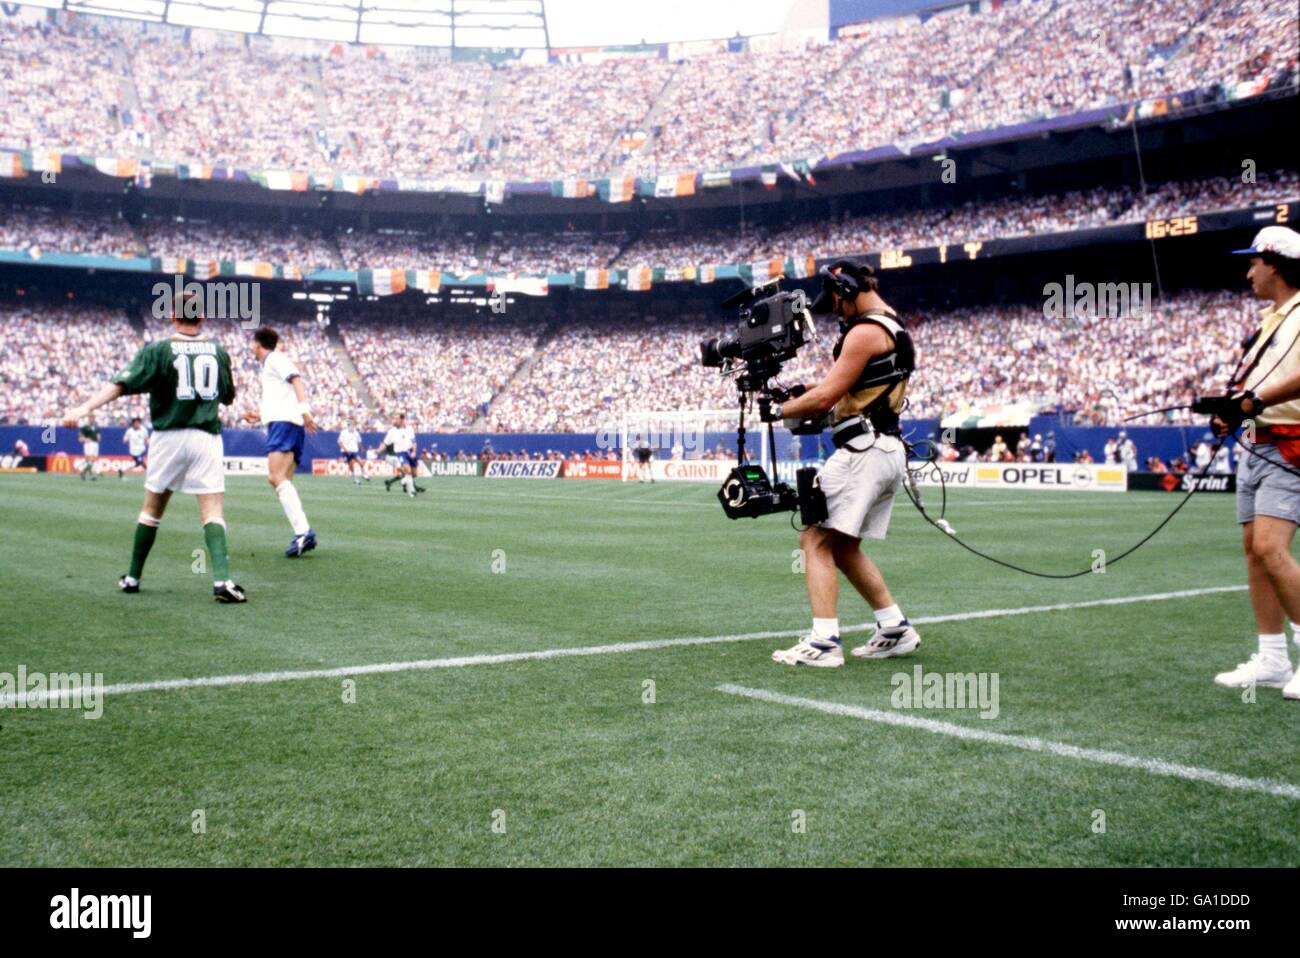 Fußball - Weltmeisterschaft USA 94 - Gruppe E - Irland gegen Italien. Ein Fernsehkameramann filmt den irischen Film John Sheridan (l) während des Spiels Stockfoto